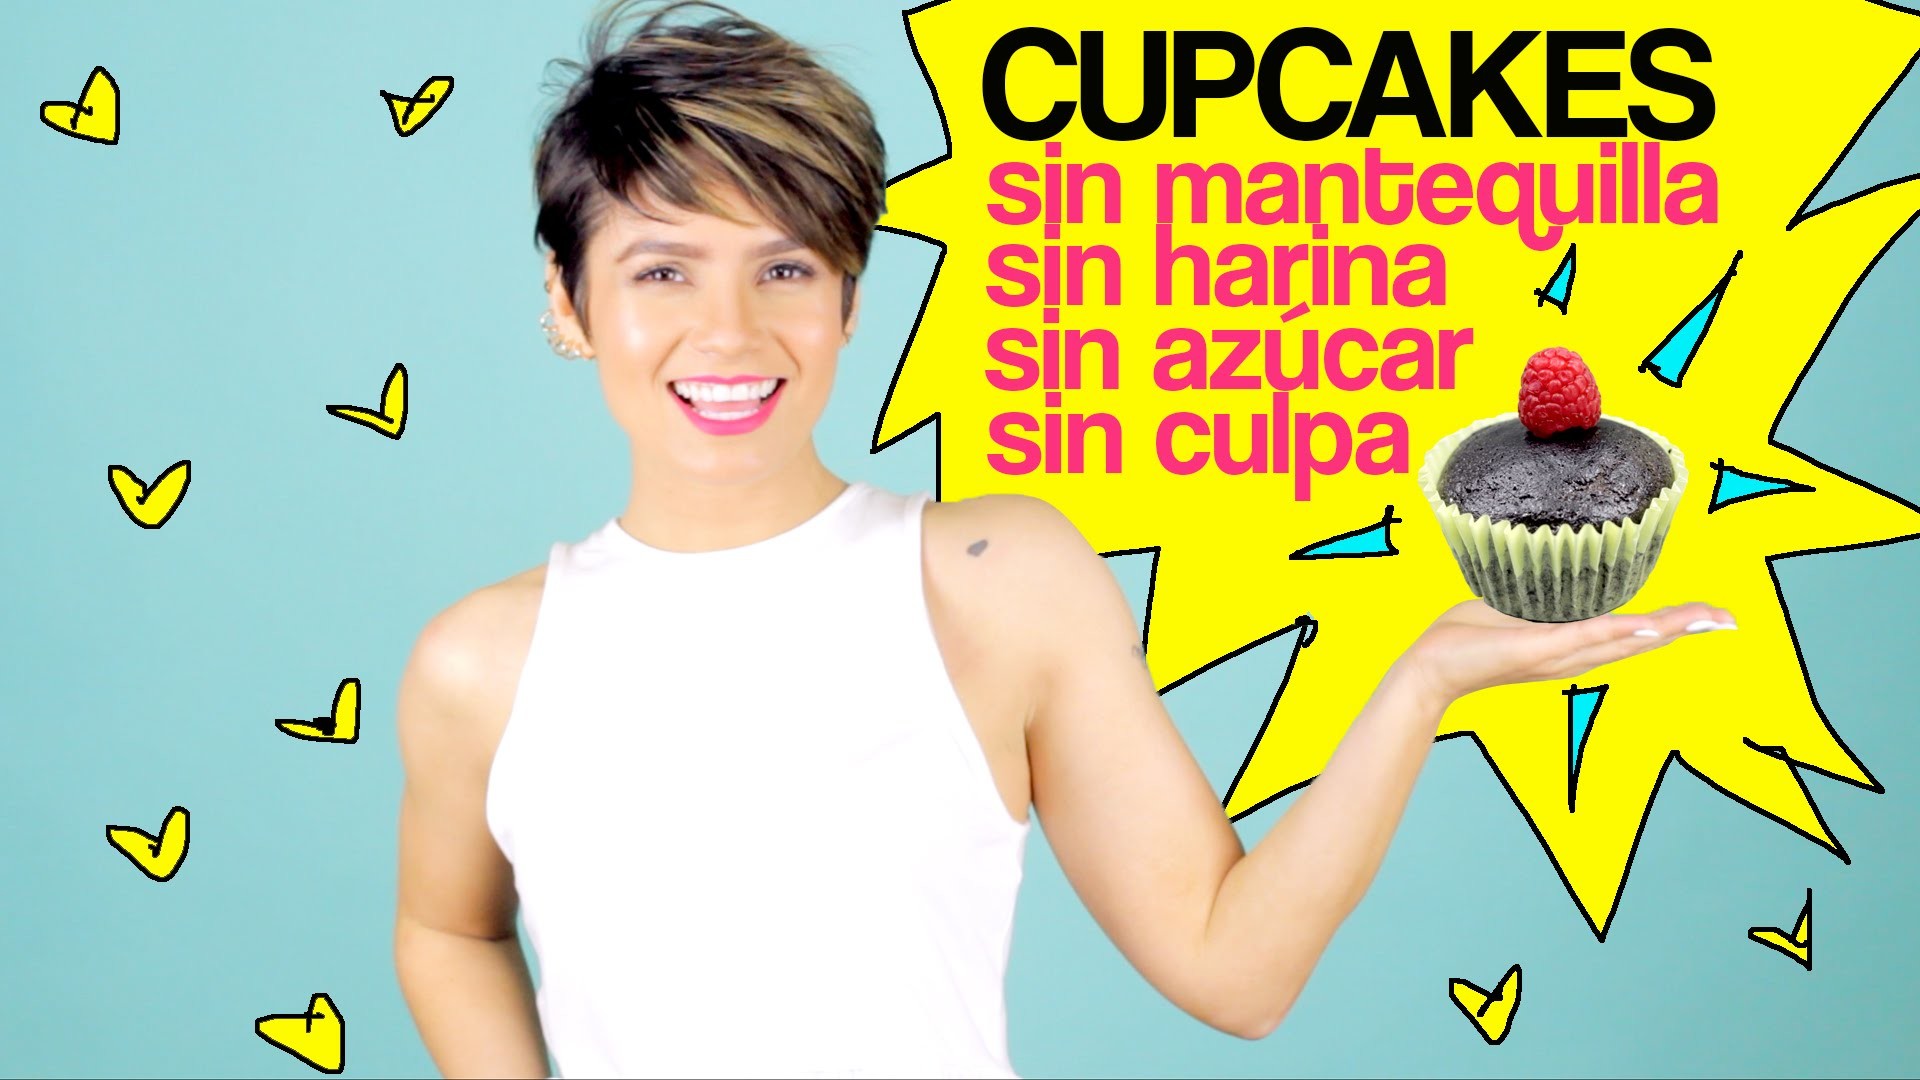 Cupcakes De Chocolate - Recetas Para Bajar De Peso - Quick Easy Healthy Desserts | Visto Bueno 49